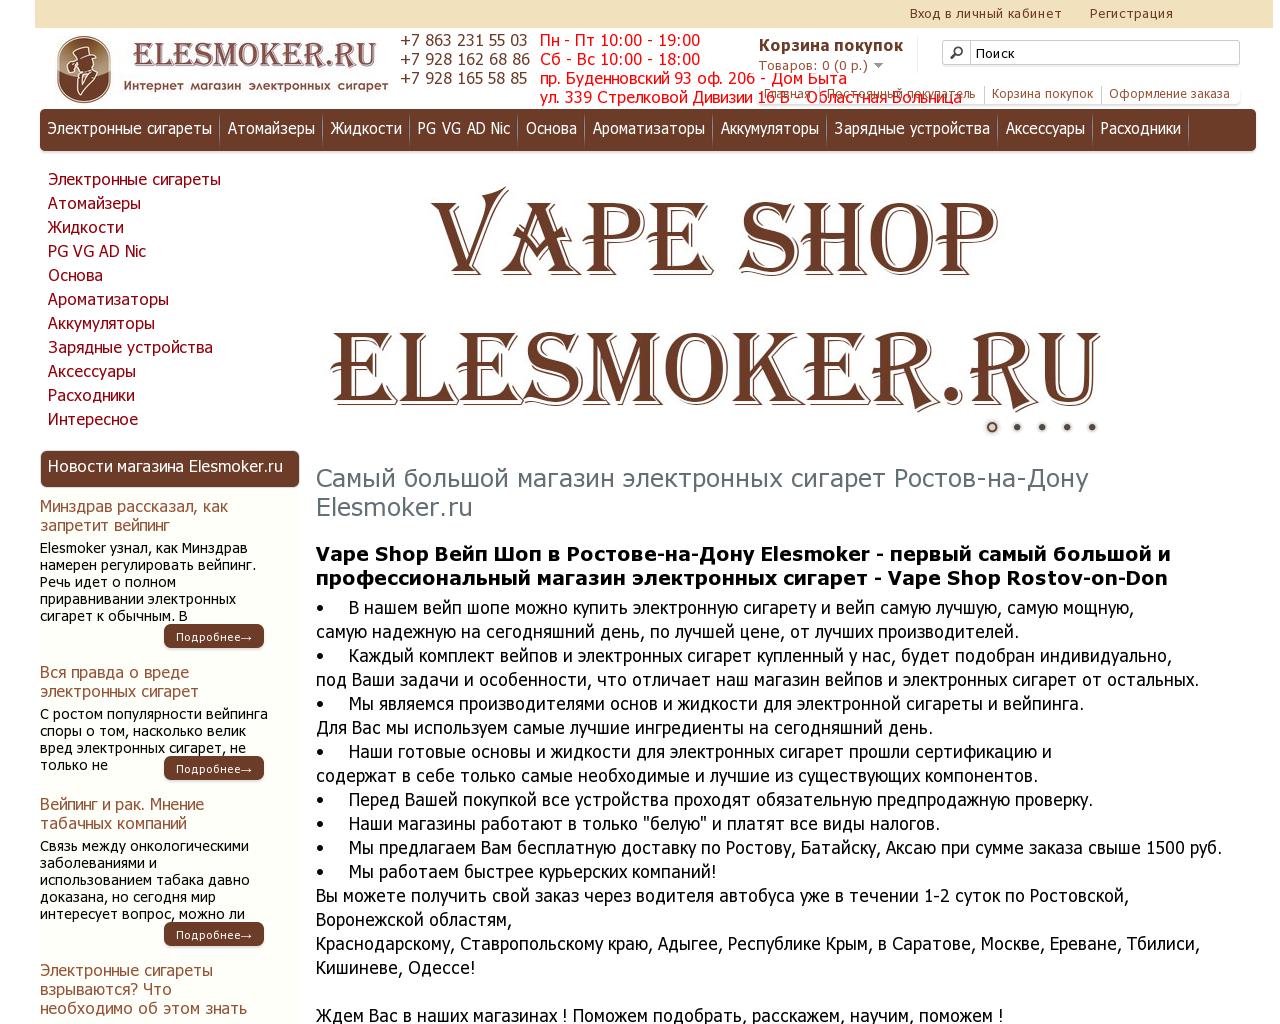 Изображение сайта elesmoker.ru в разрешении 1280x1024